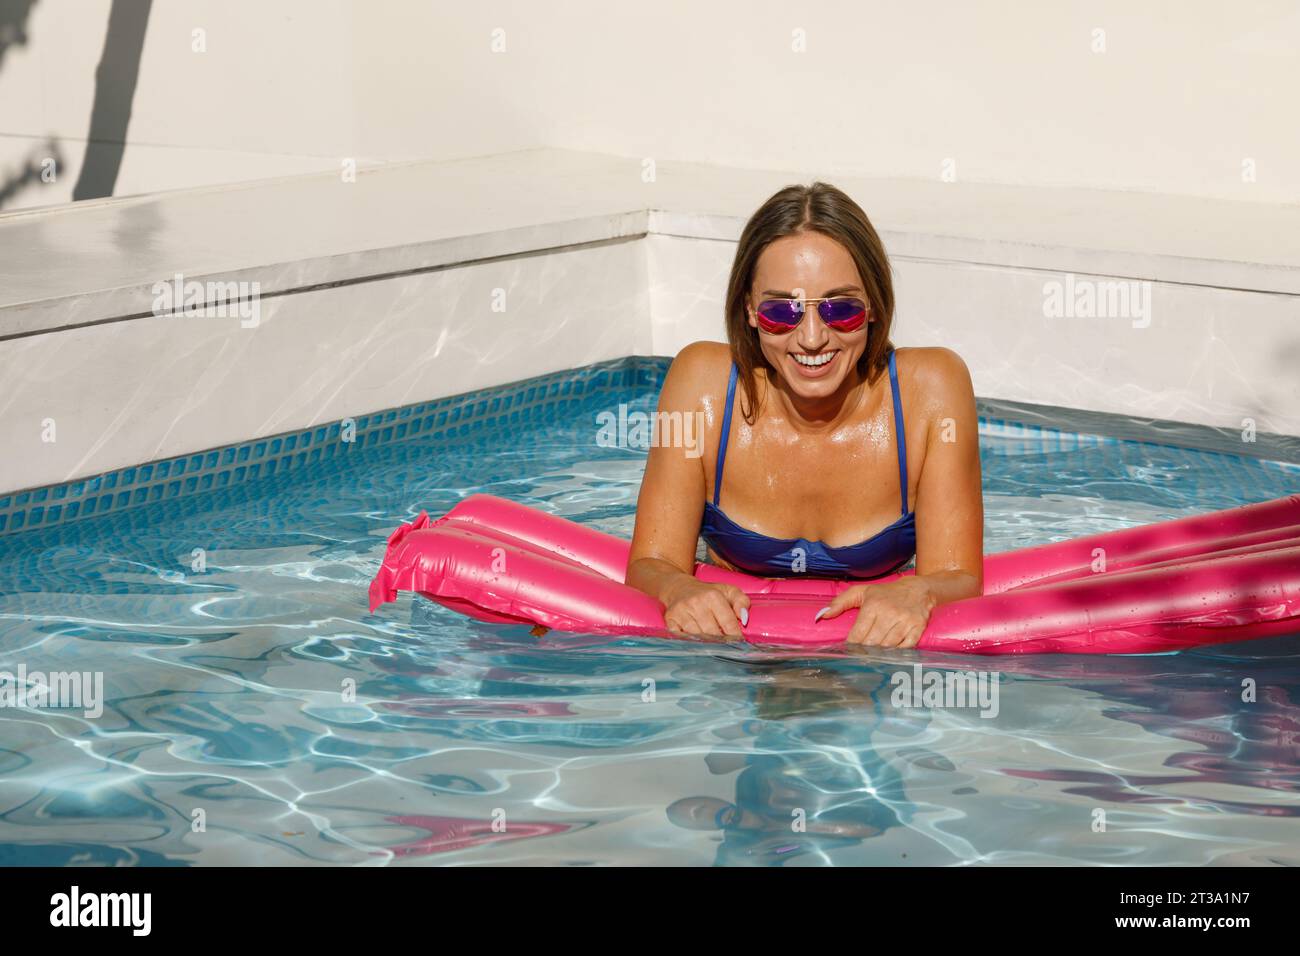 Sommerglück: Frau, die auf aufblasbarer Matratze entspannt Stockfoto